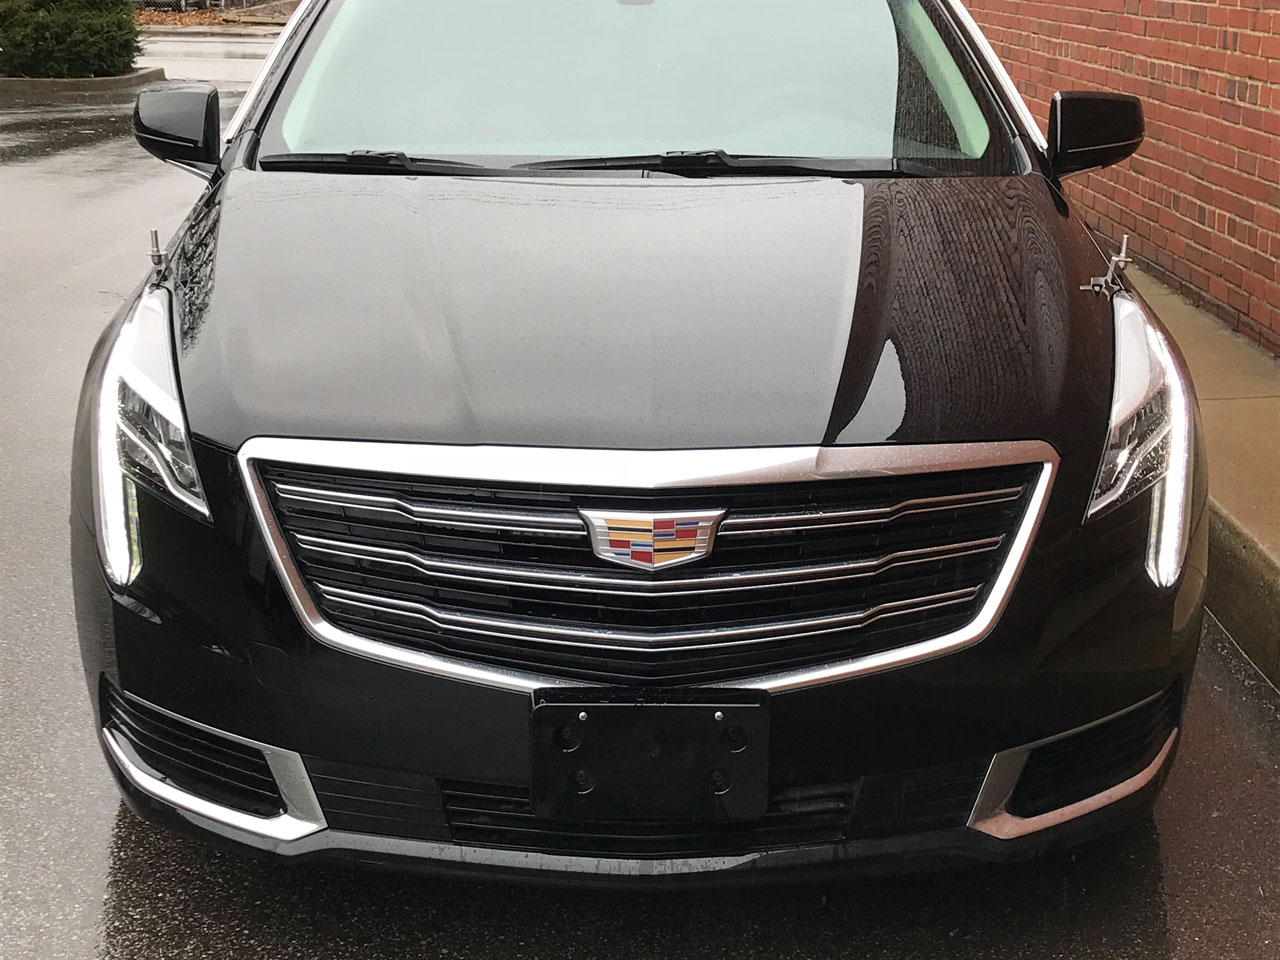 2019 Eagle Coach Company Cadillac Eagle Kingsley Hearse 16